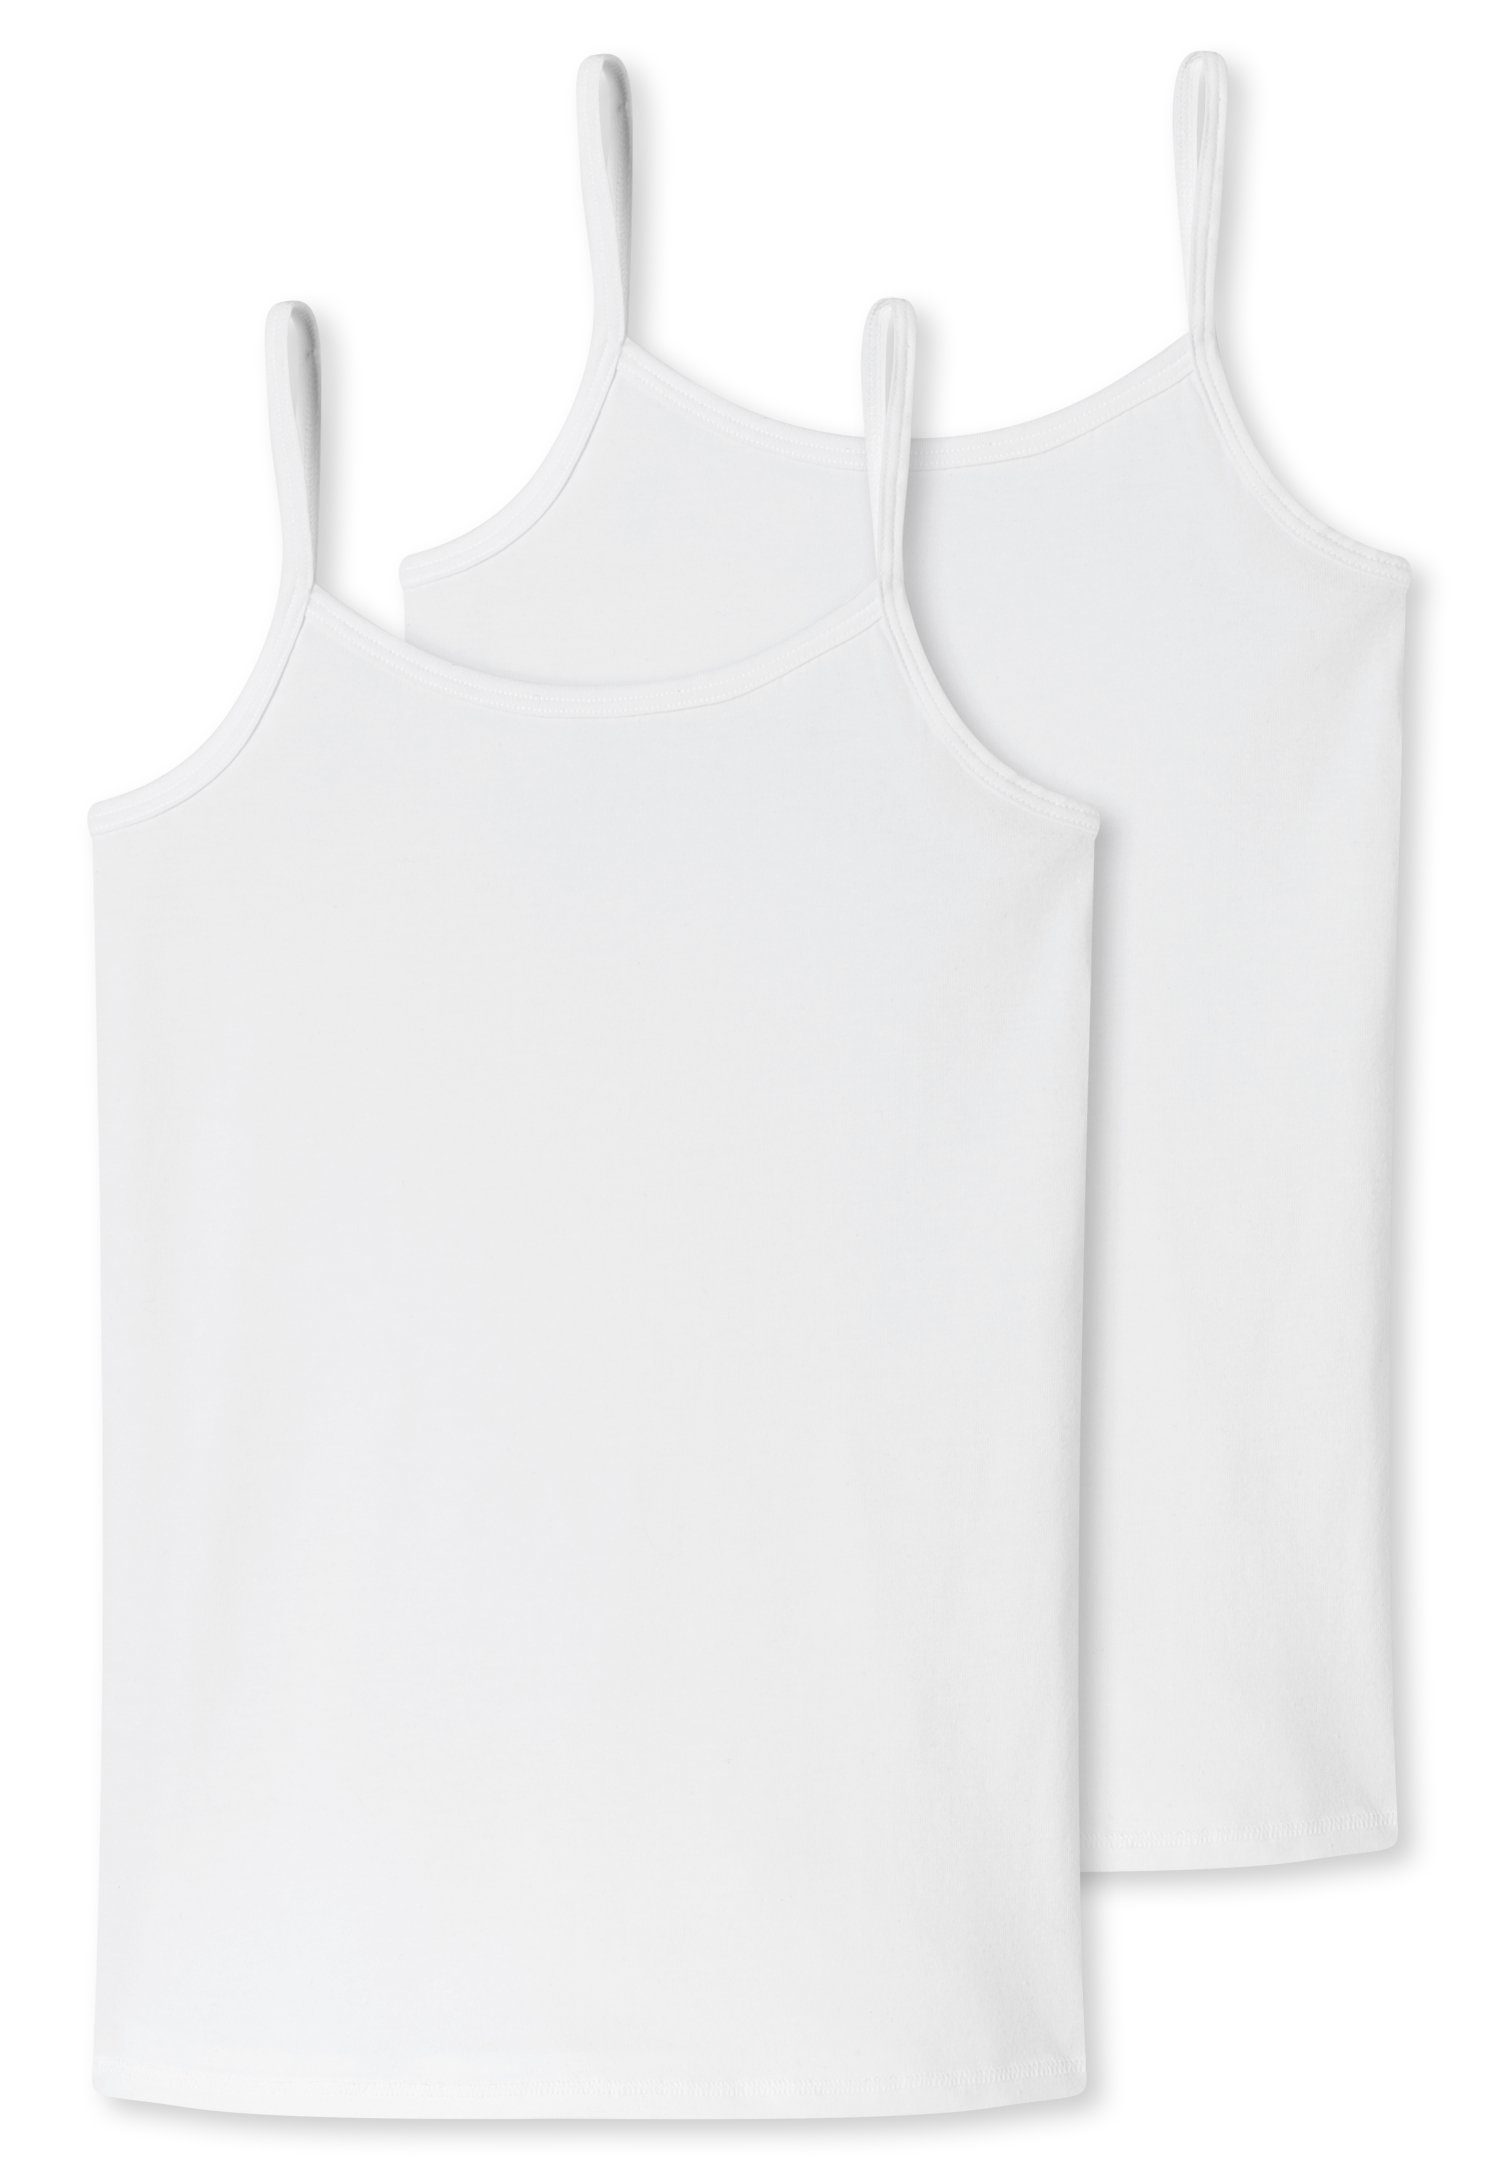 Unterhemd schmalen mit Schiesser Trägern weiß (2er-Pack)